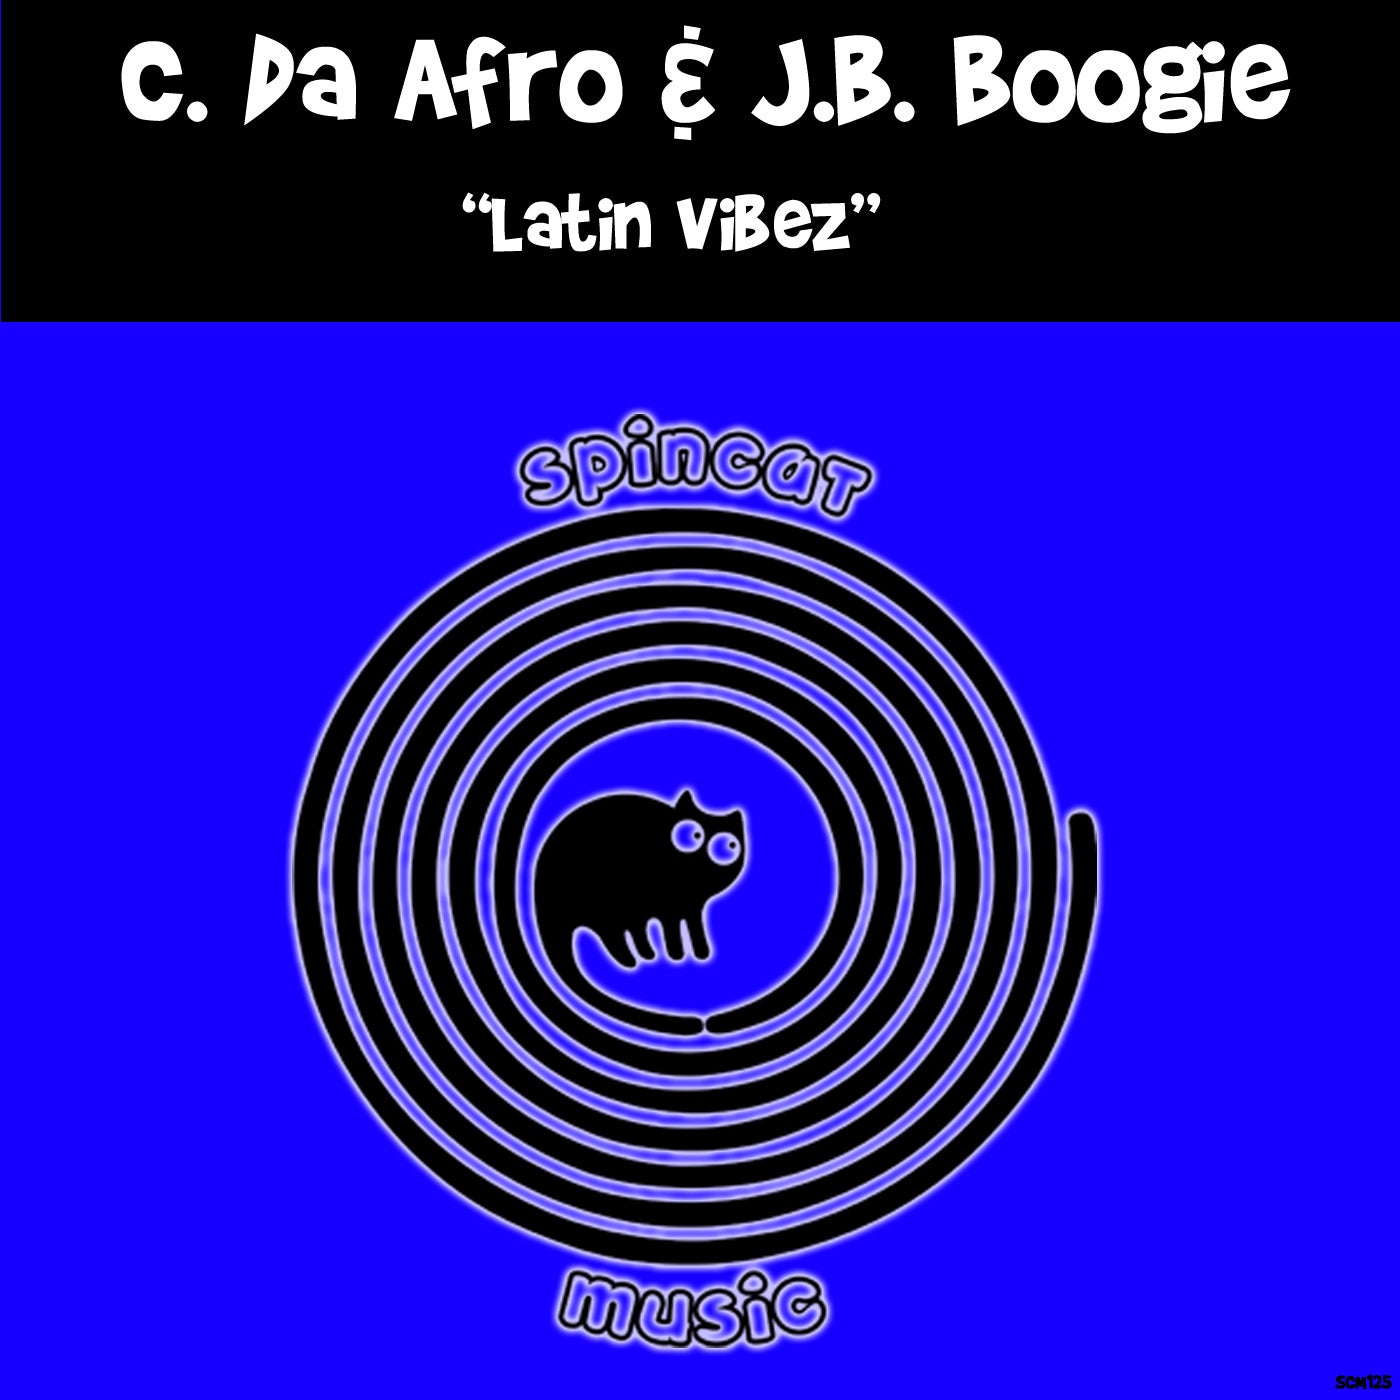 C. Da Afro, J.B. Boogie - Latin Vibez (Original Mix)